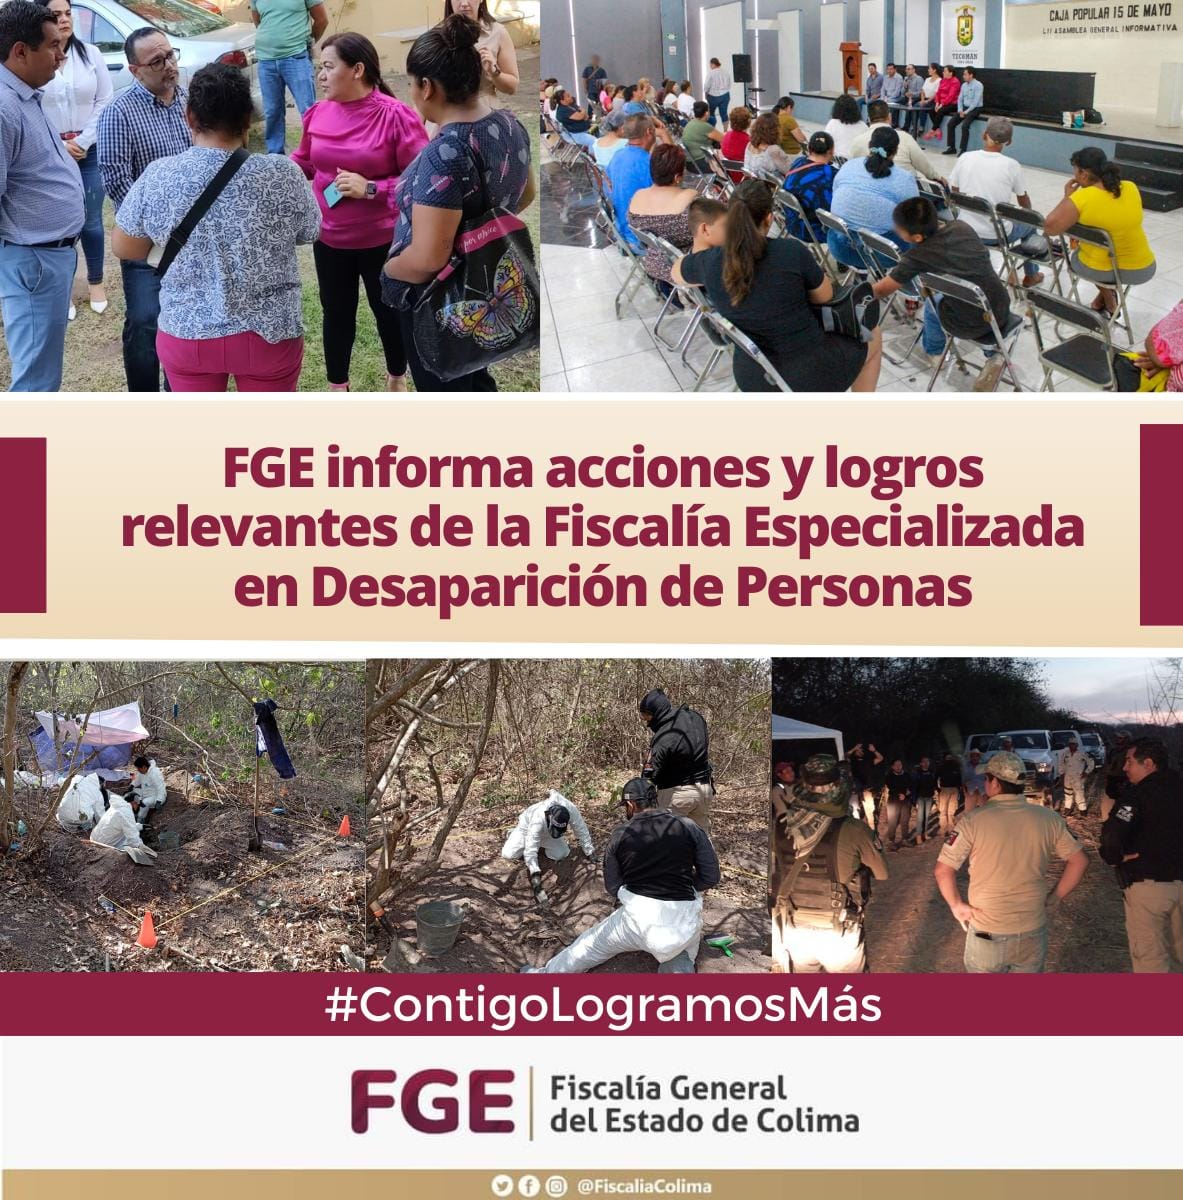 FGE informa acciones y logros relevantesde la Fiscalía Especializada en Desaparición de Personas